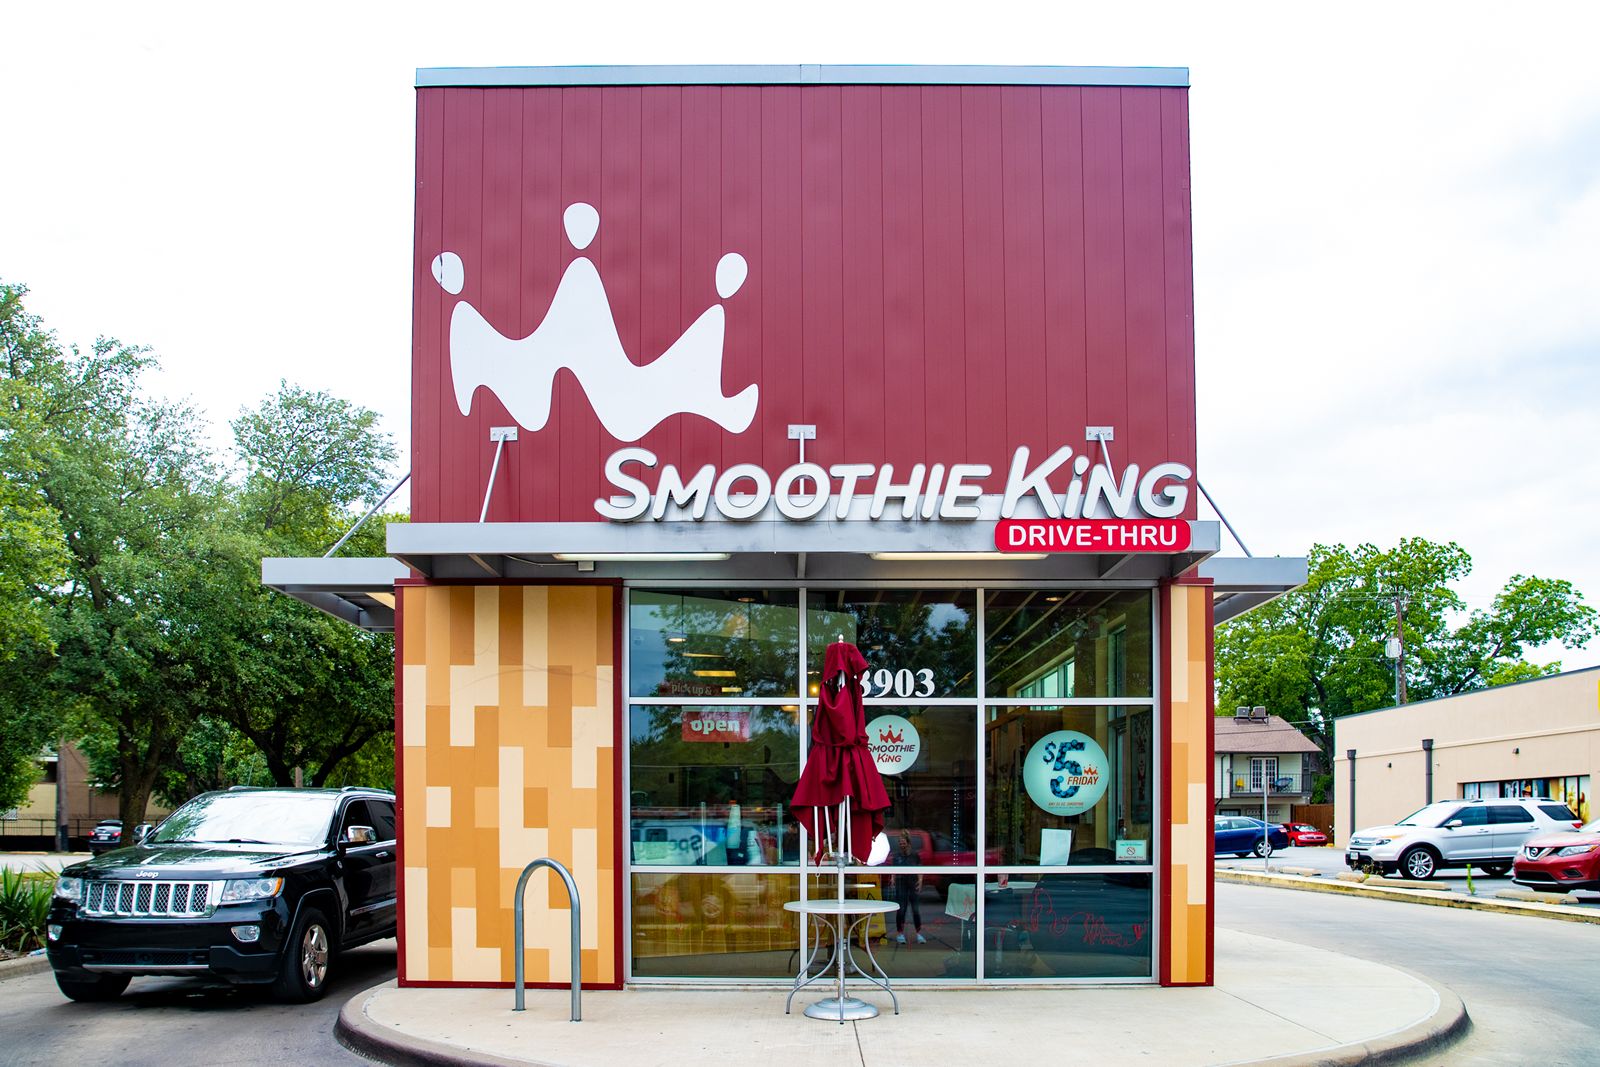 Smoothie King réalise une croissance stellaire au premier semestre 2021